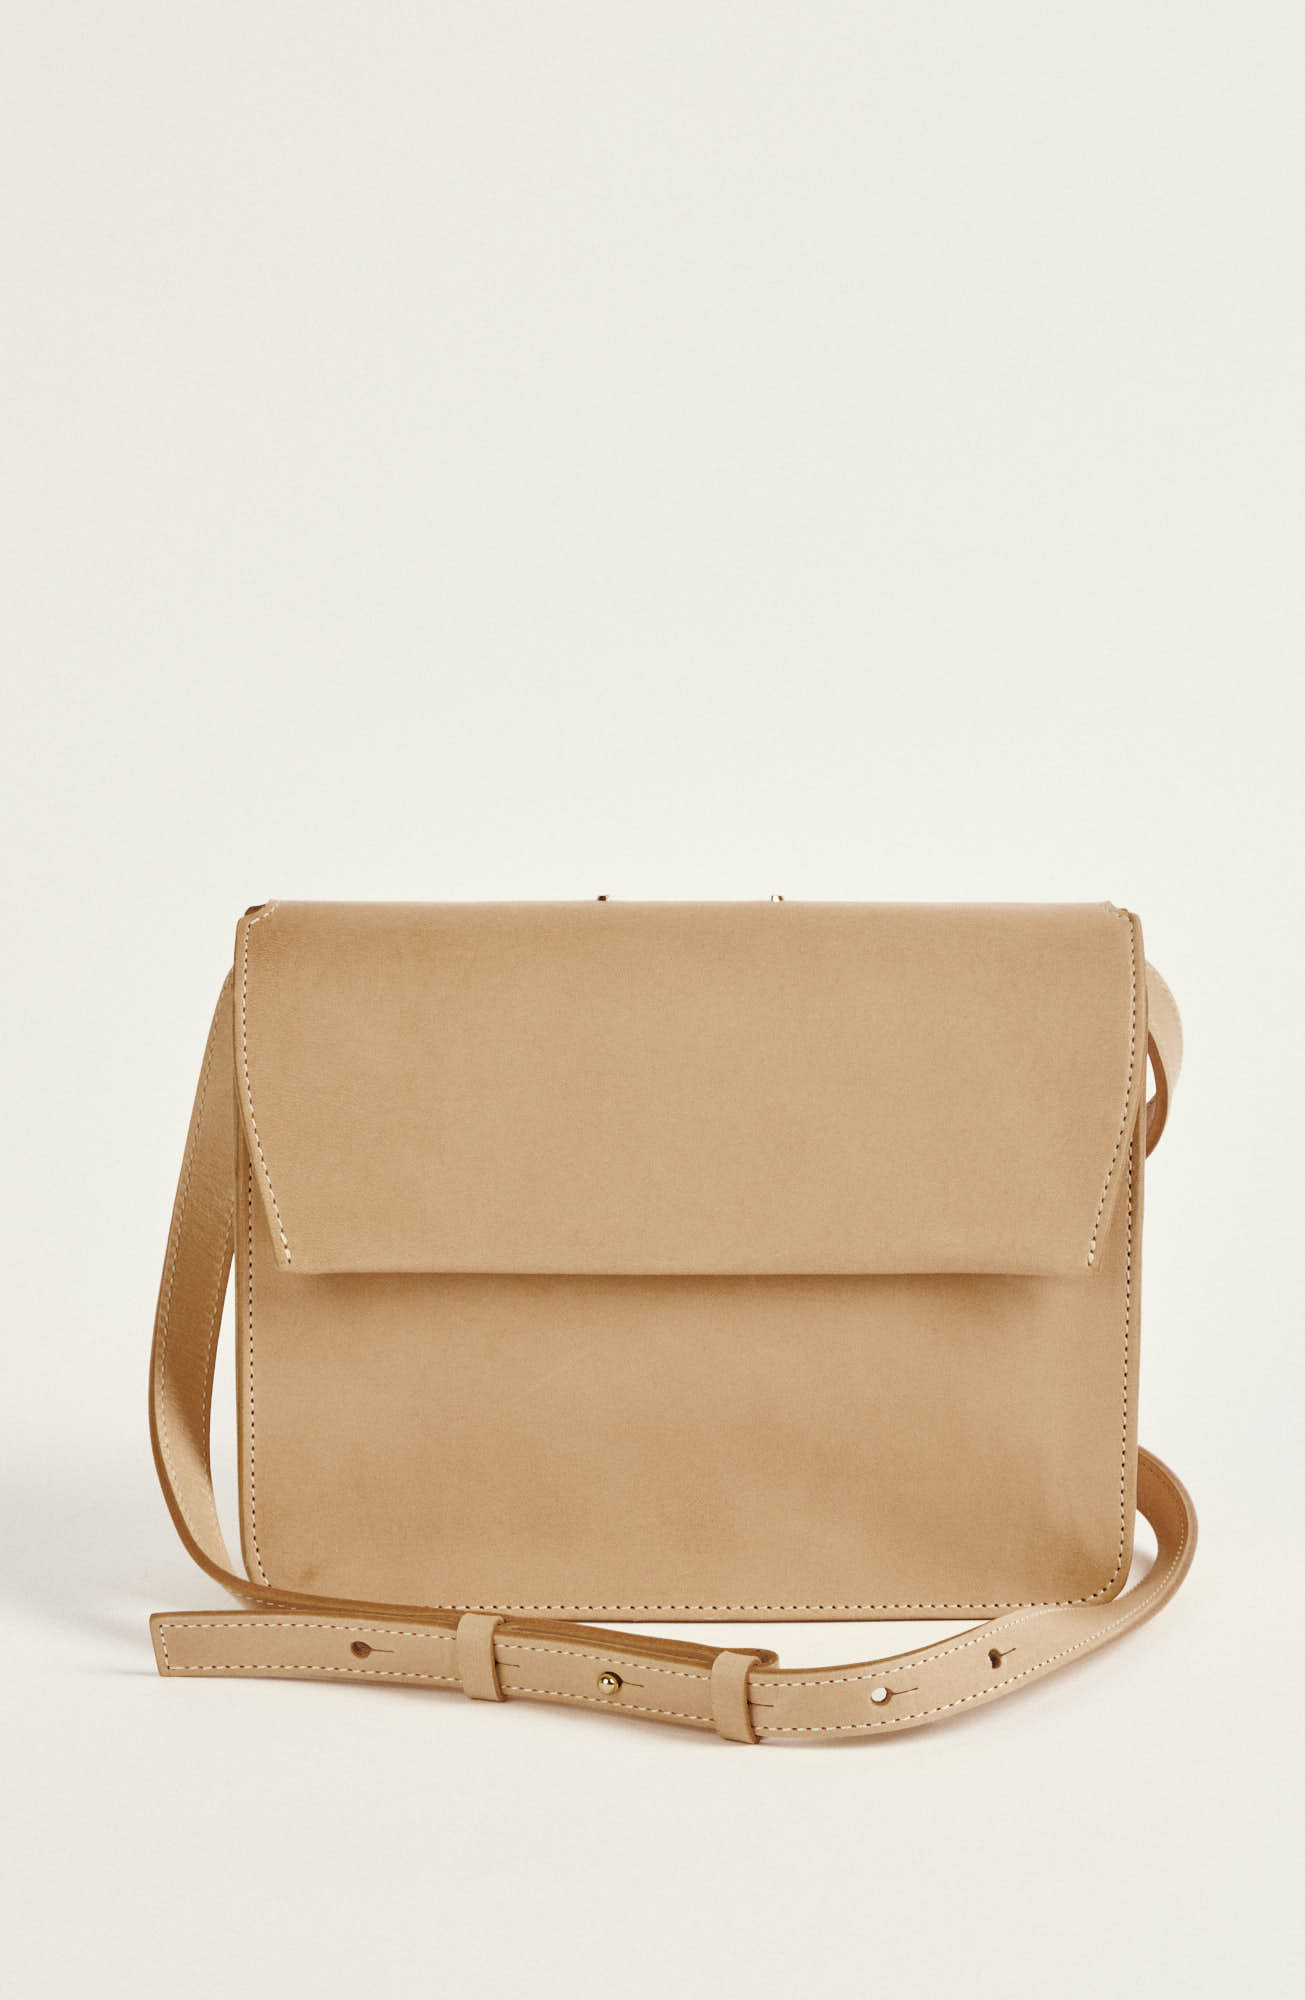 Natural color leather shoulder bag "AB83